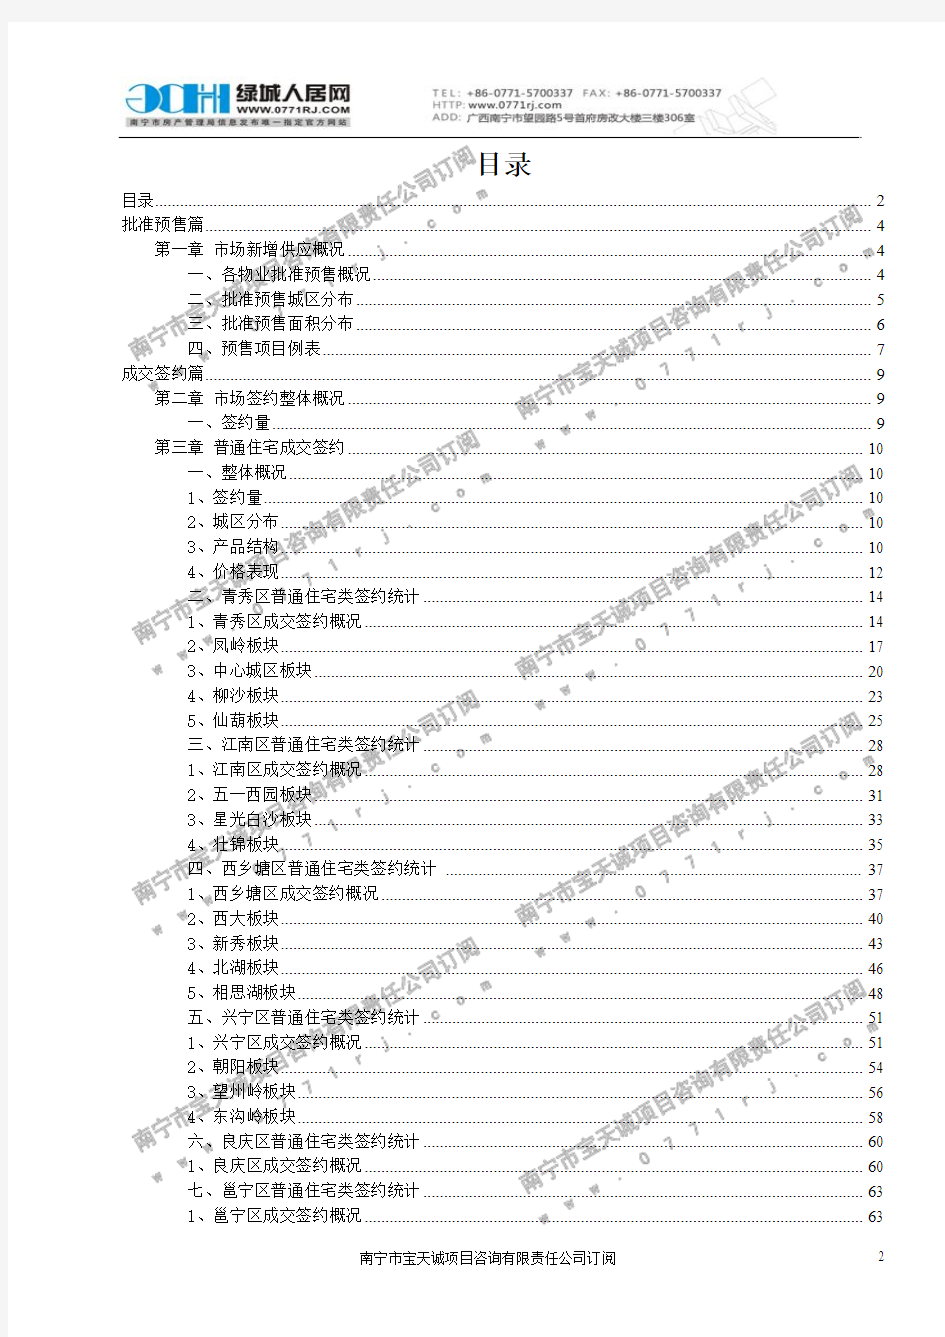 2013年05月南宁市房地产市场简报数据(签约时间)